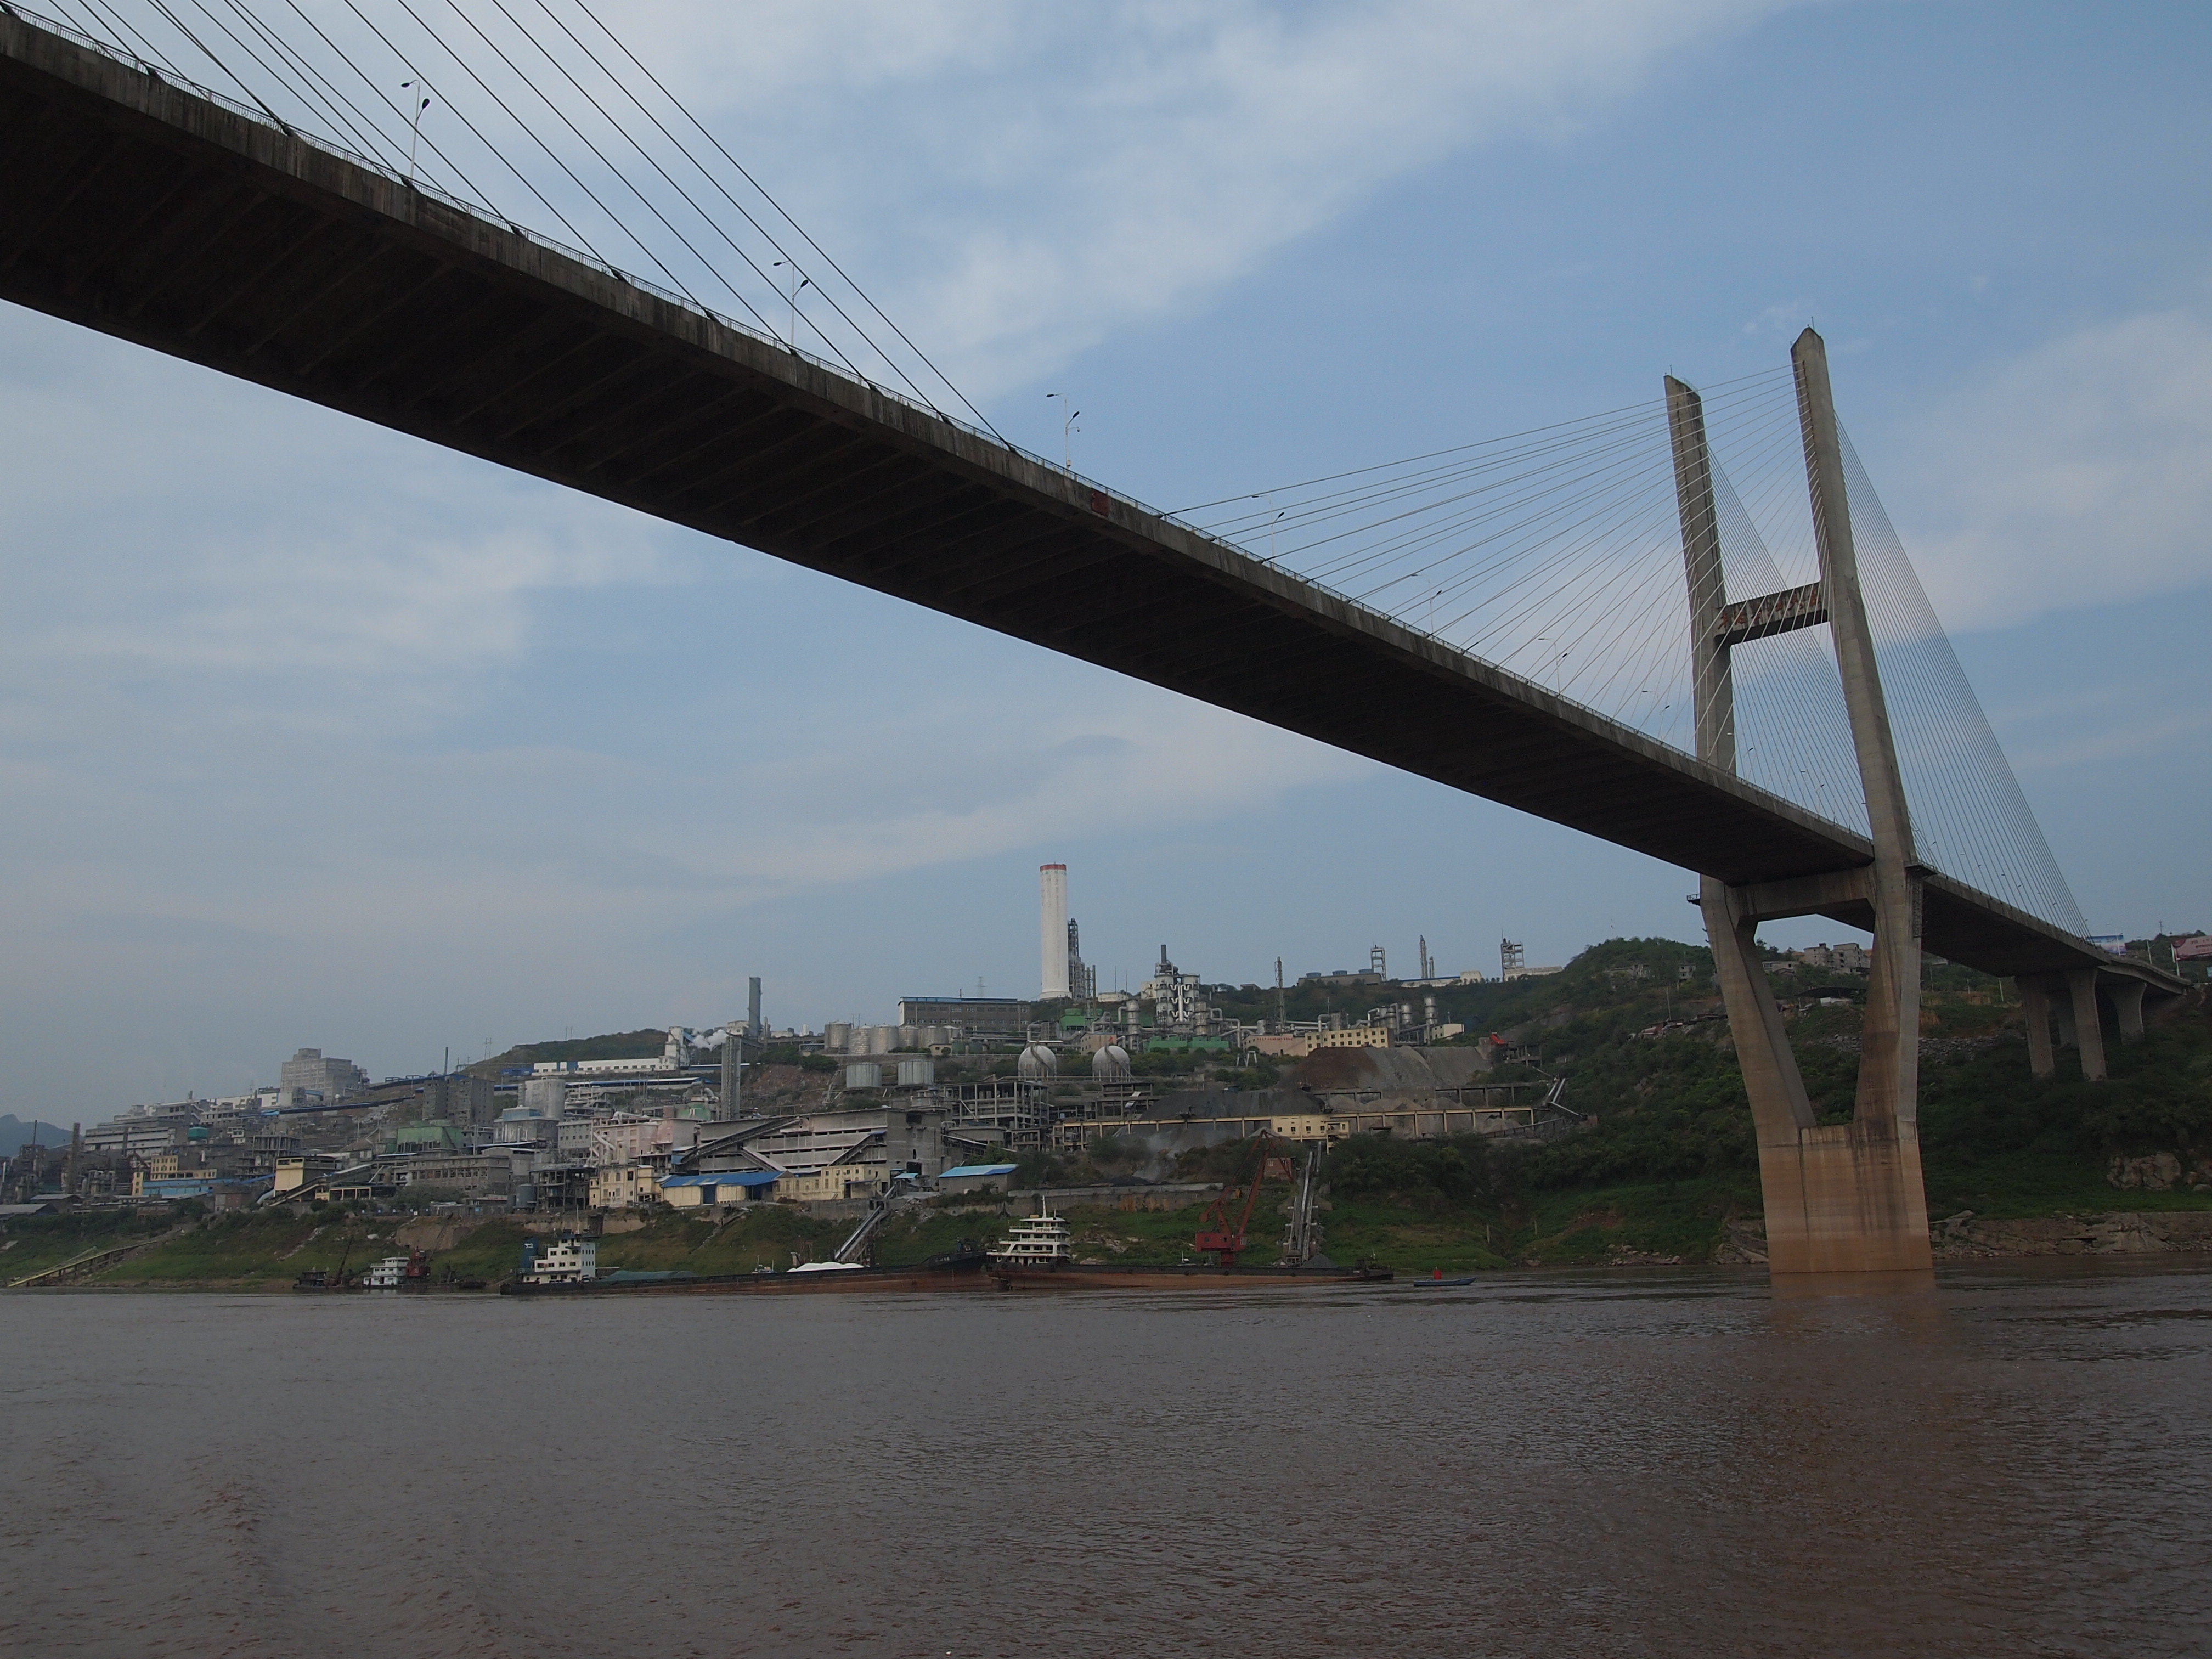 首先是横跨长江的石板沟长江大桥,大桥全长1307米,主桥全宽22米,主